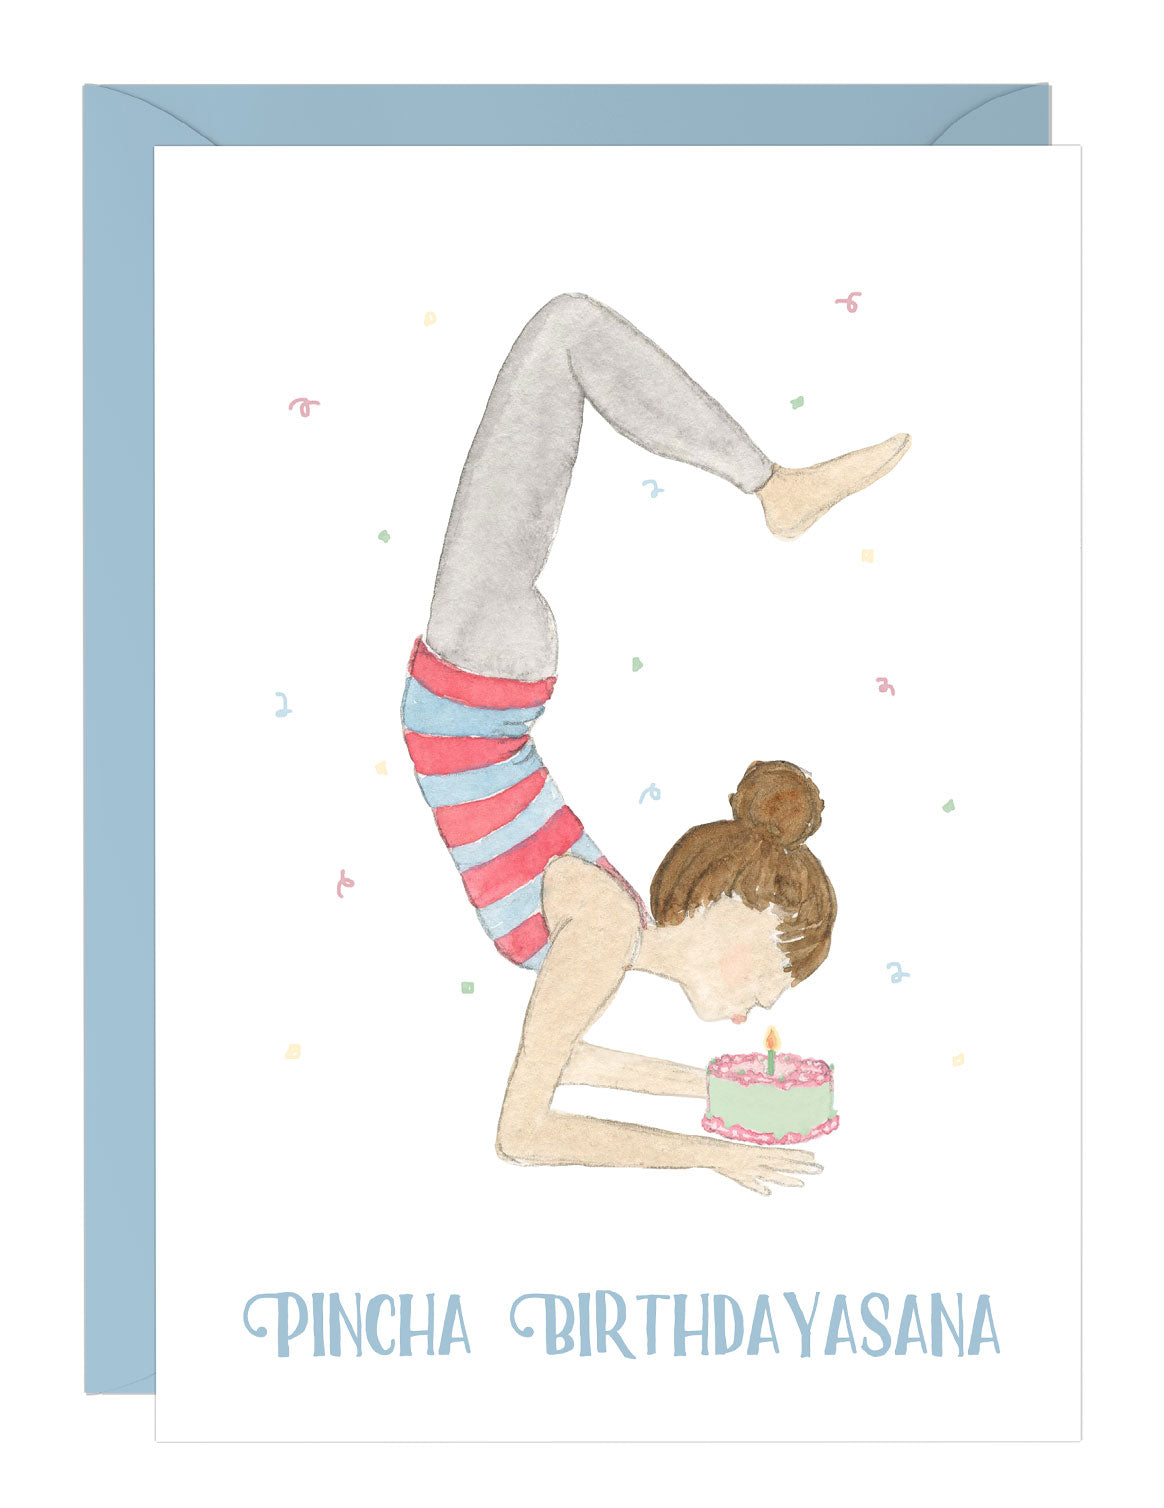 Pincha Birthdayasana - Birthday Card